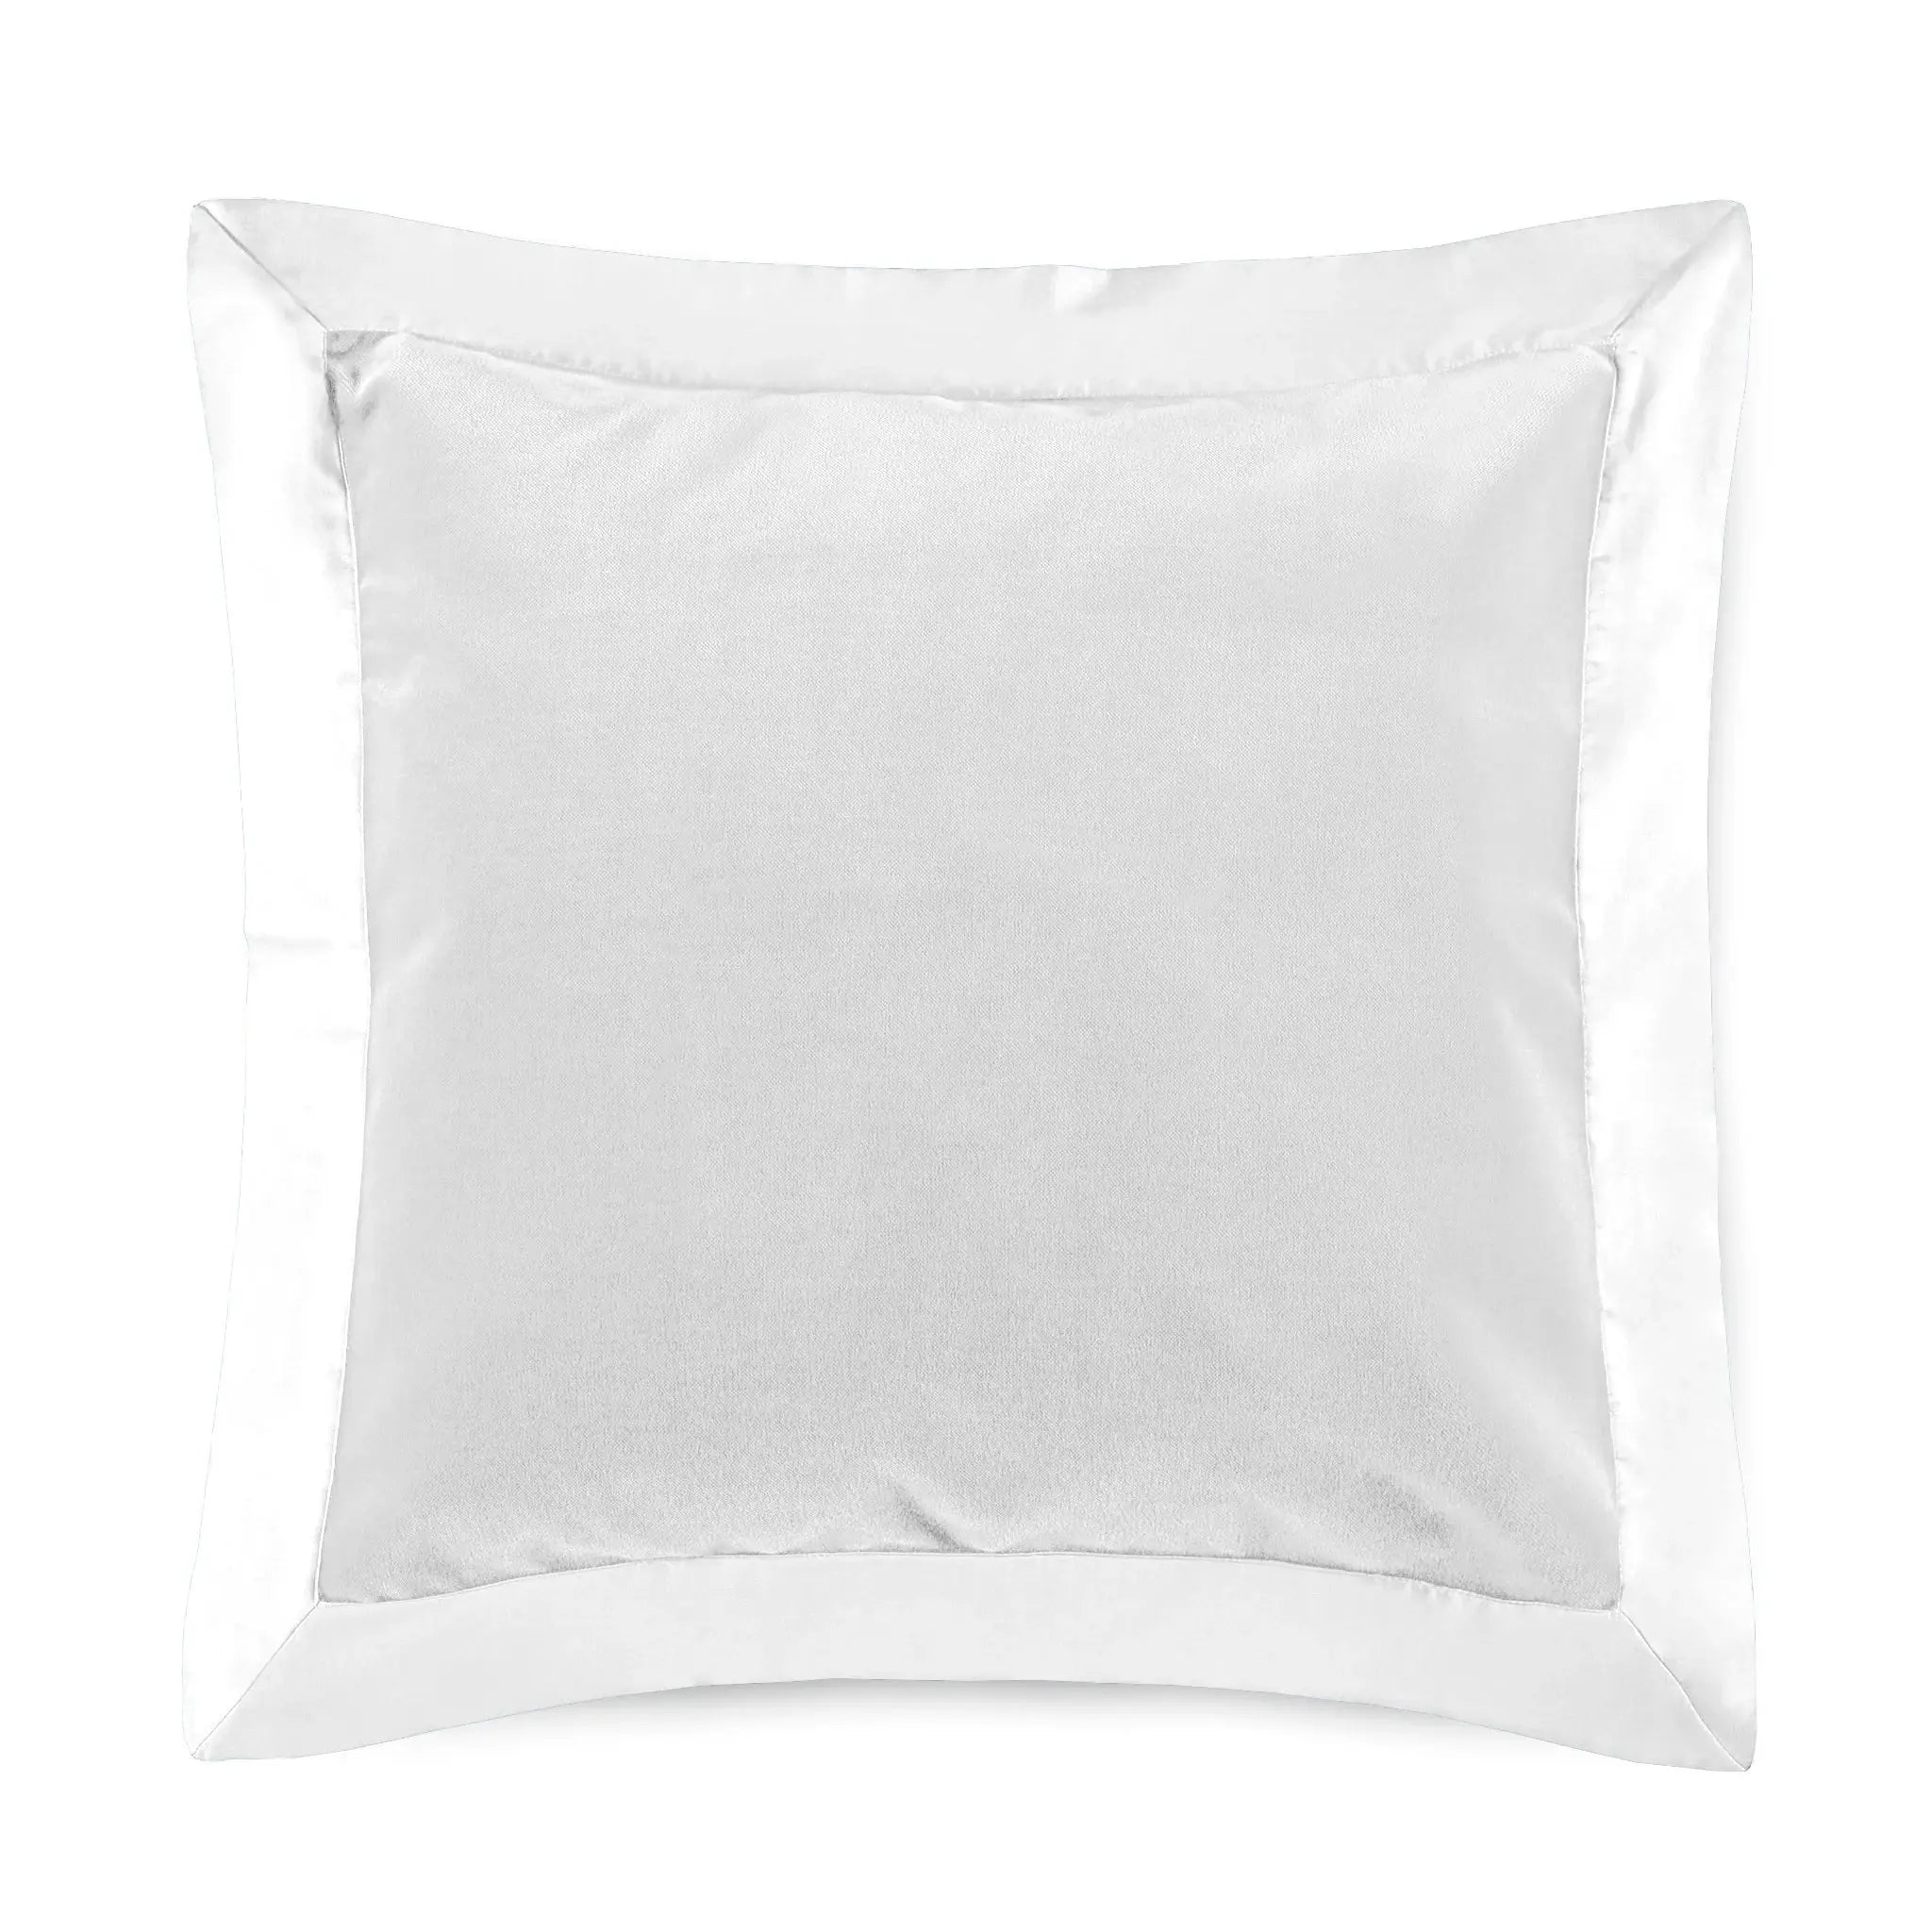 Amalia Home Cirrus Decorative Pillow in White